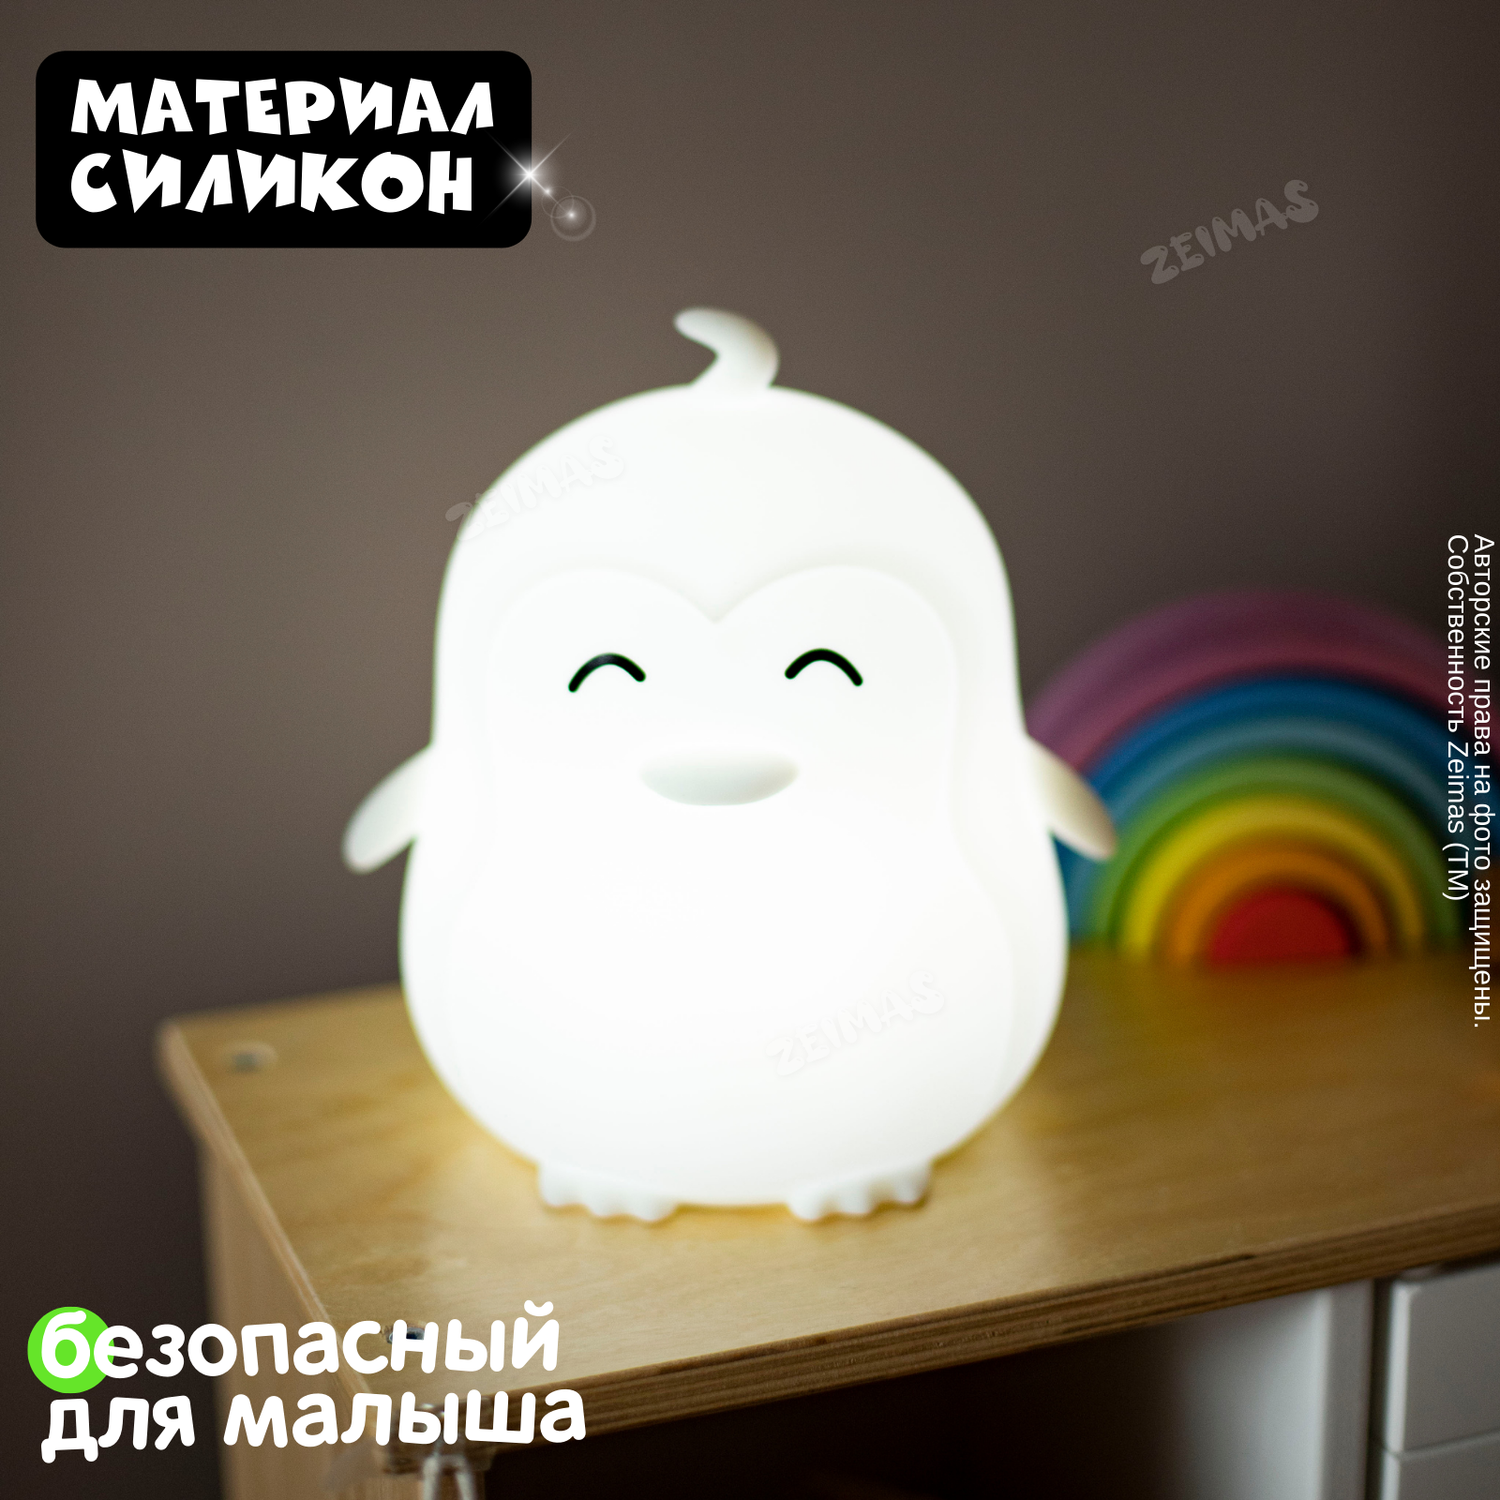 Ночник детский силиконовый Zeimas светильник игрушка Пингвин с пультом 9 цветов большой размер - фото 12